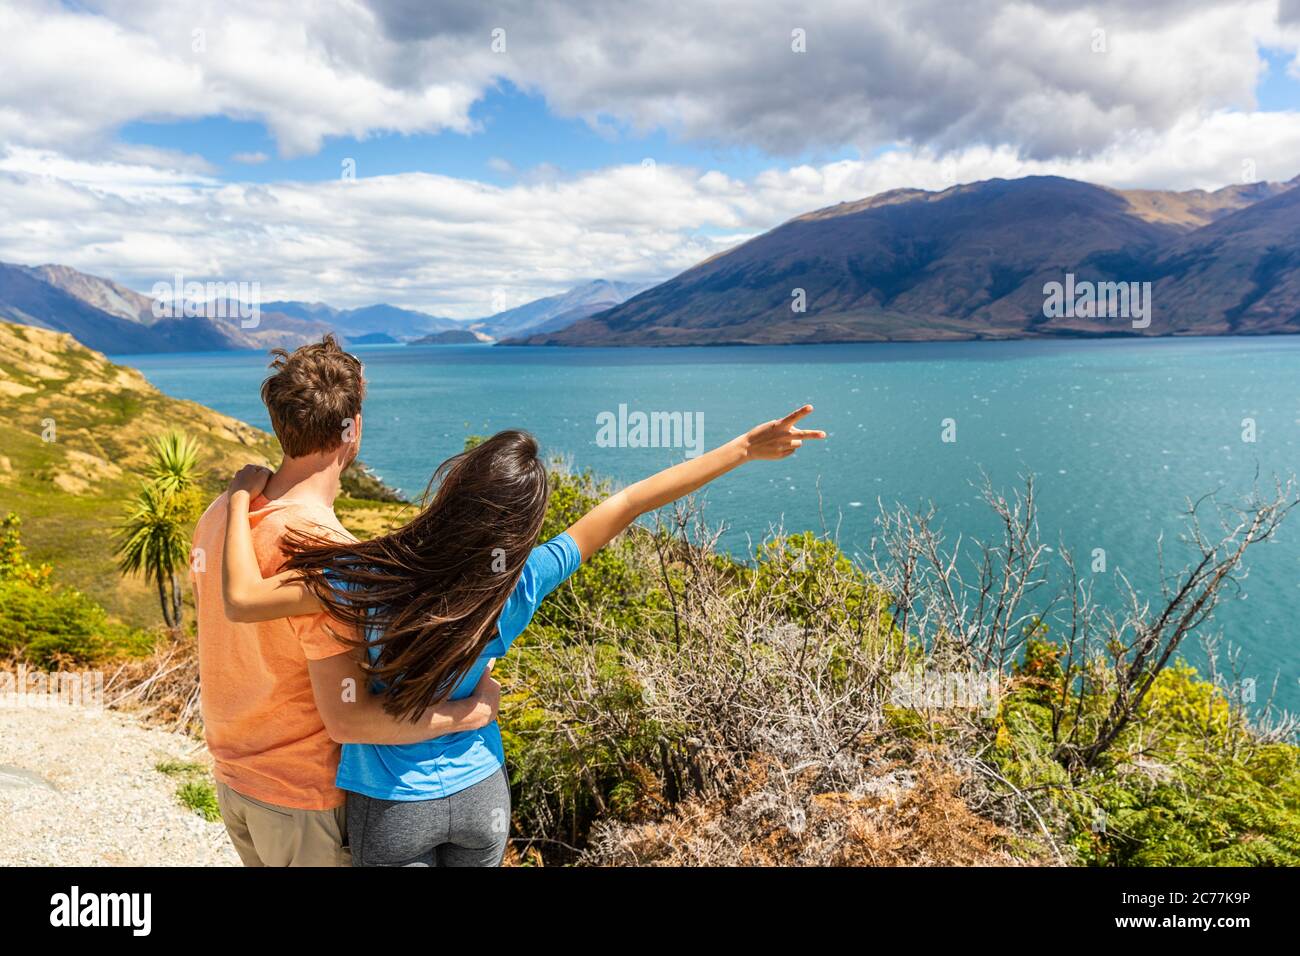 Coppia di viaggio che si gode di un viaggio in Nuova Zelanda, donna con braccio in su in eccitazione a Lake view in Nuova Zelanda. Trampers viaggio destinazione estiva Foto Stock